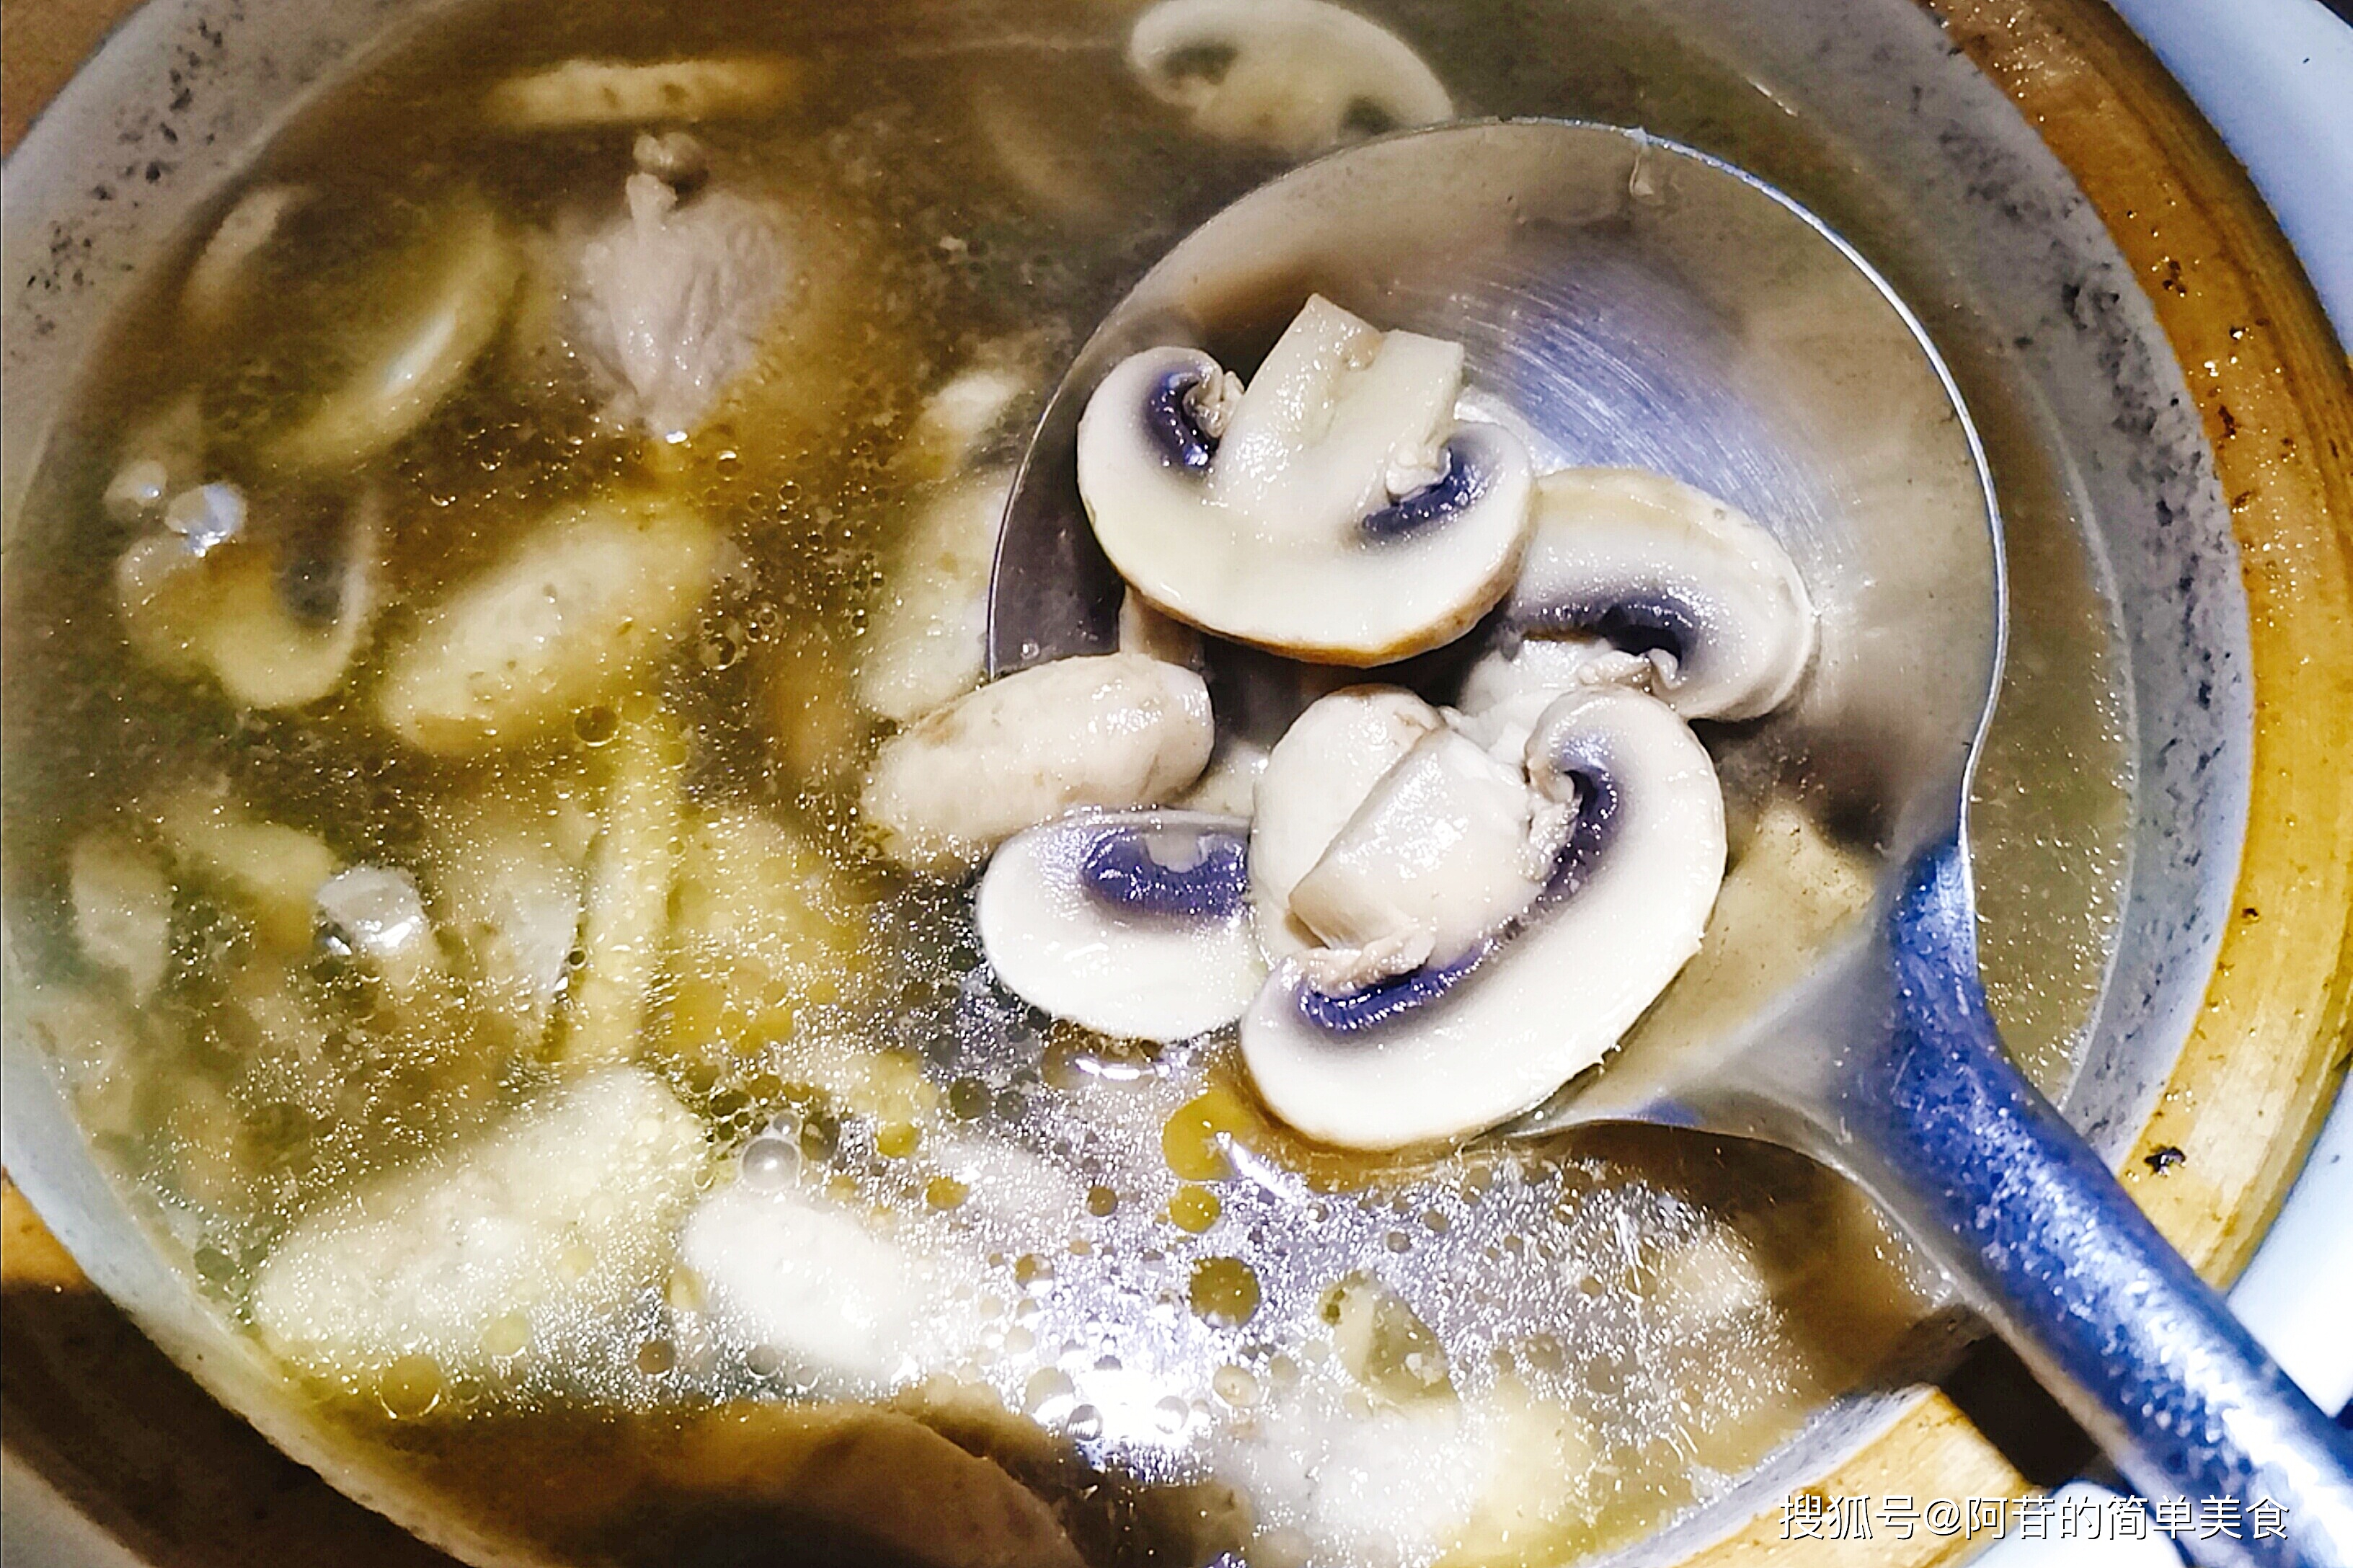 原创超级鲜美的口蘑骨头汤用料简单做法简单简单成就美味